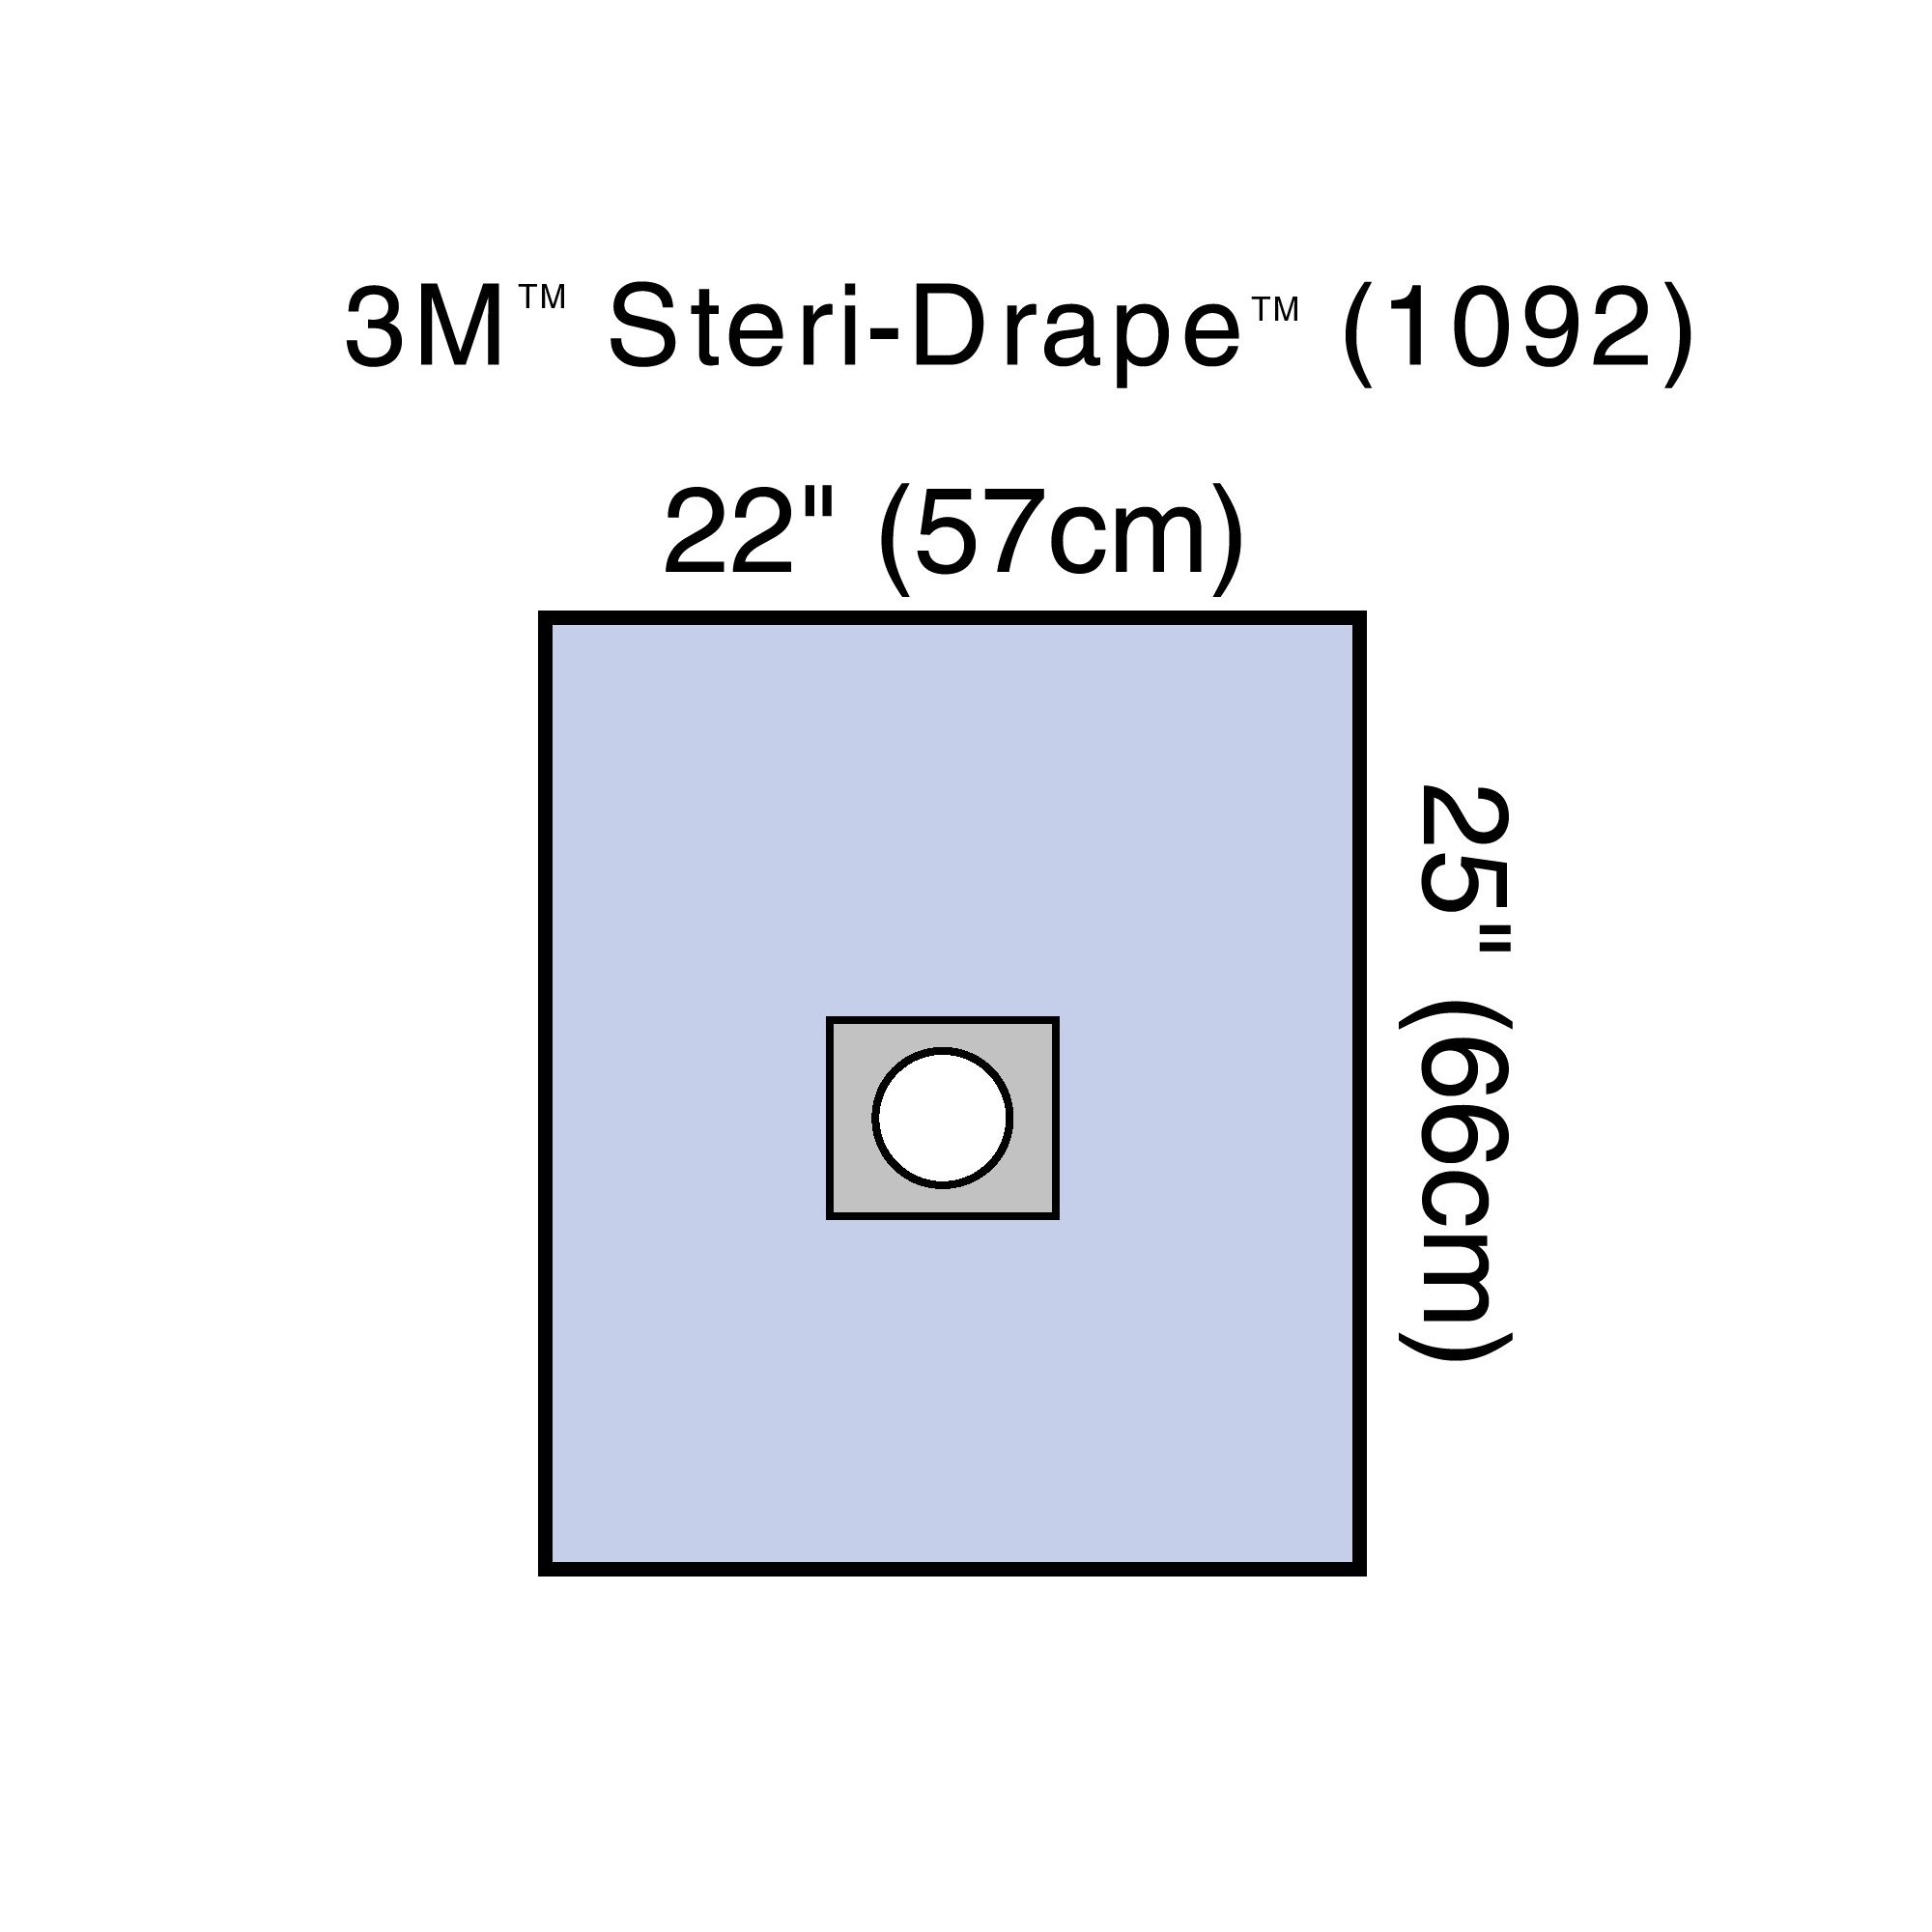 Drape Surgical Drape 3M™ Steri-Drape™ Small Drap .. .  .  